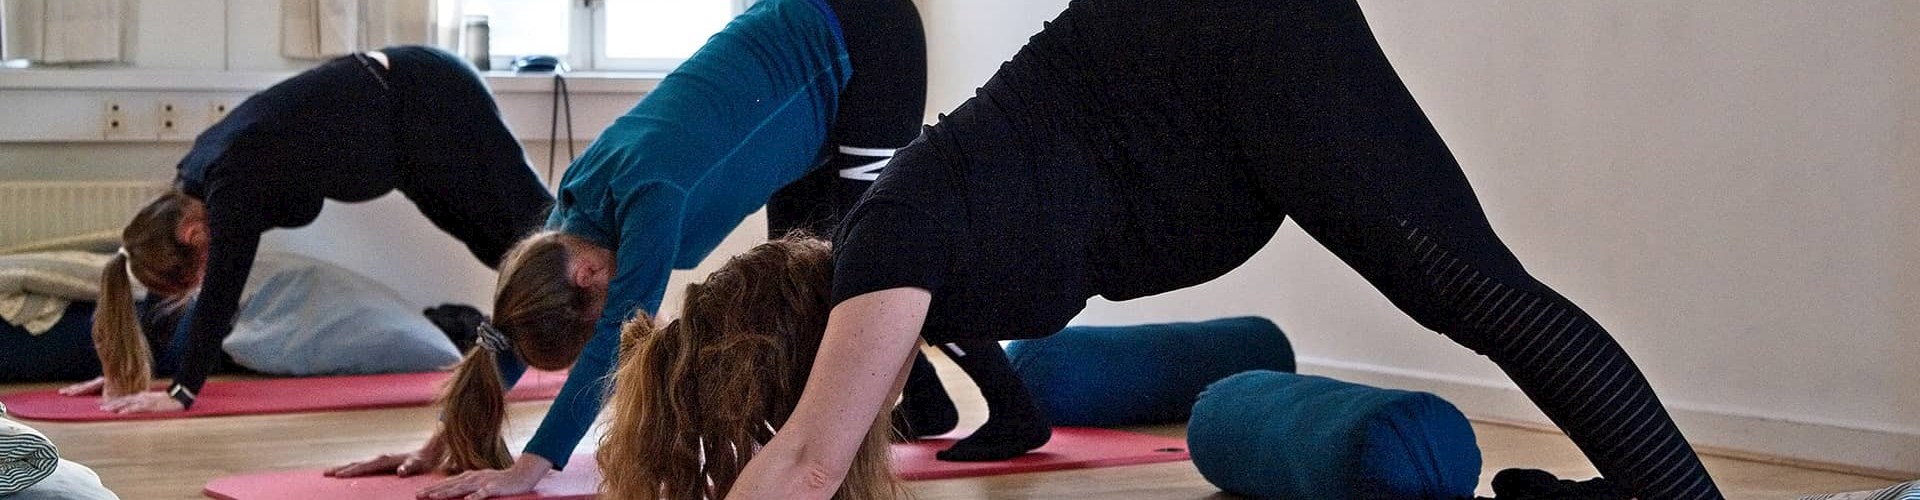 Yoga og pilates for gravide ved FOF Århus i Fødselshuset, underviser Mette Axel Petersen